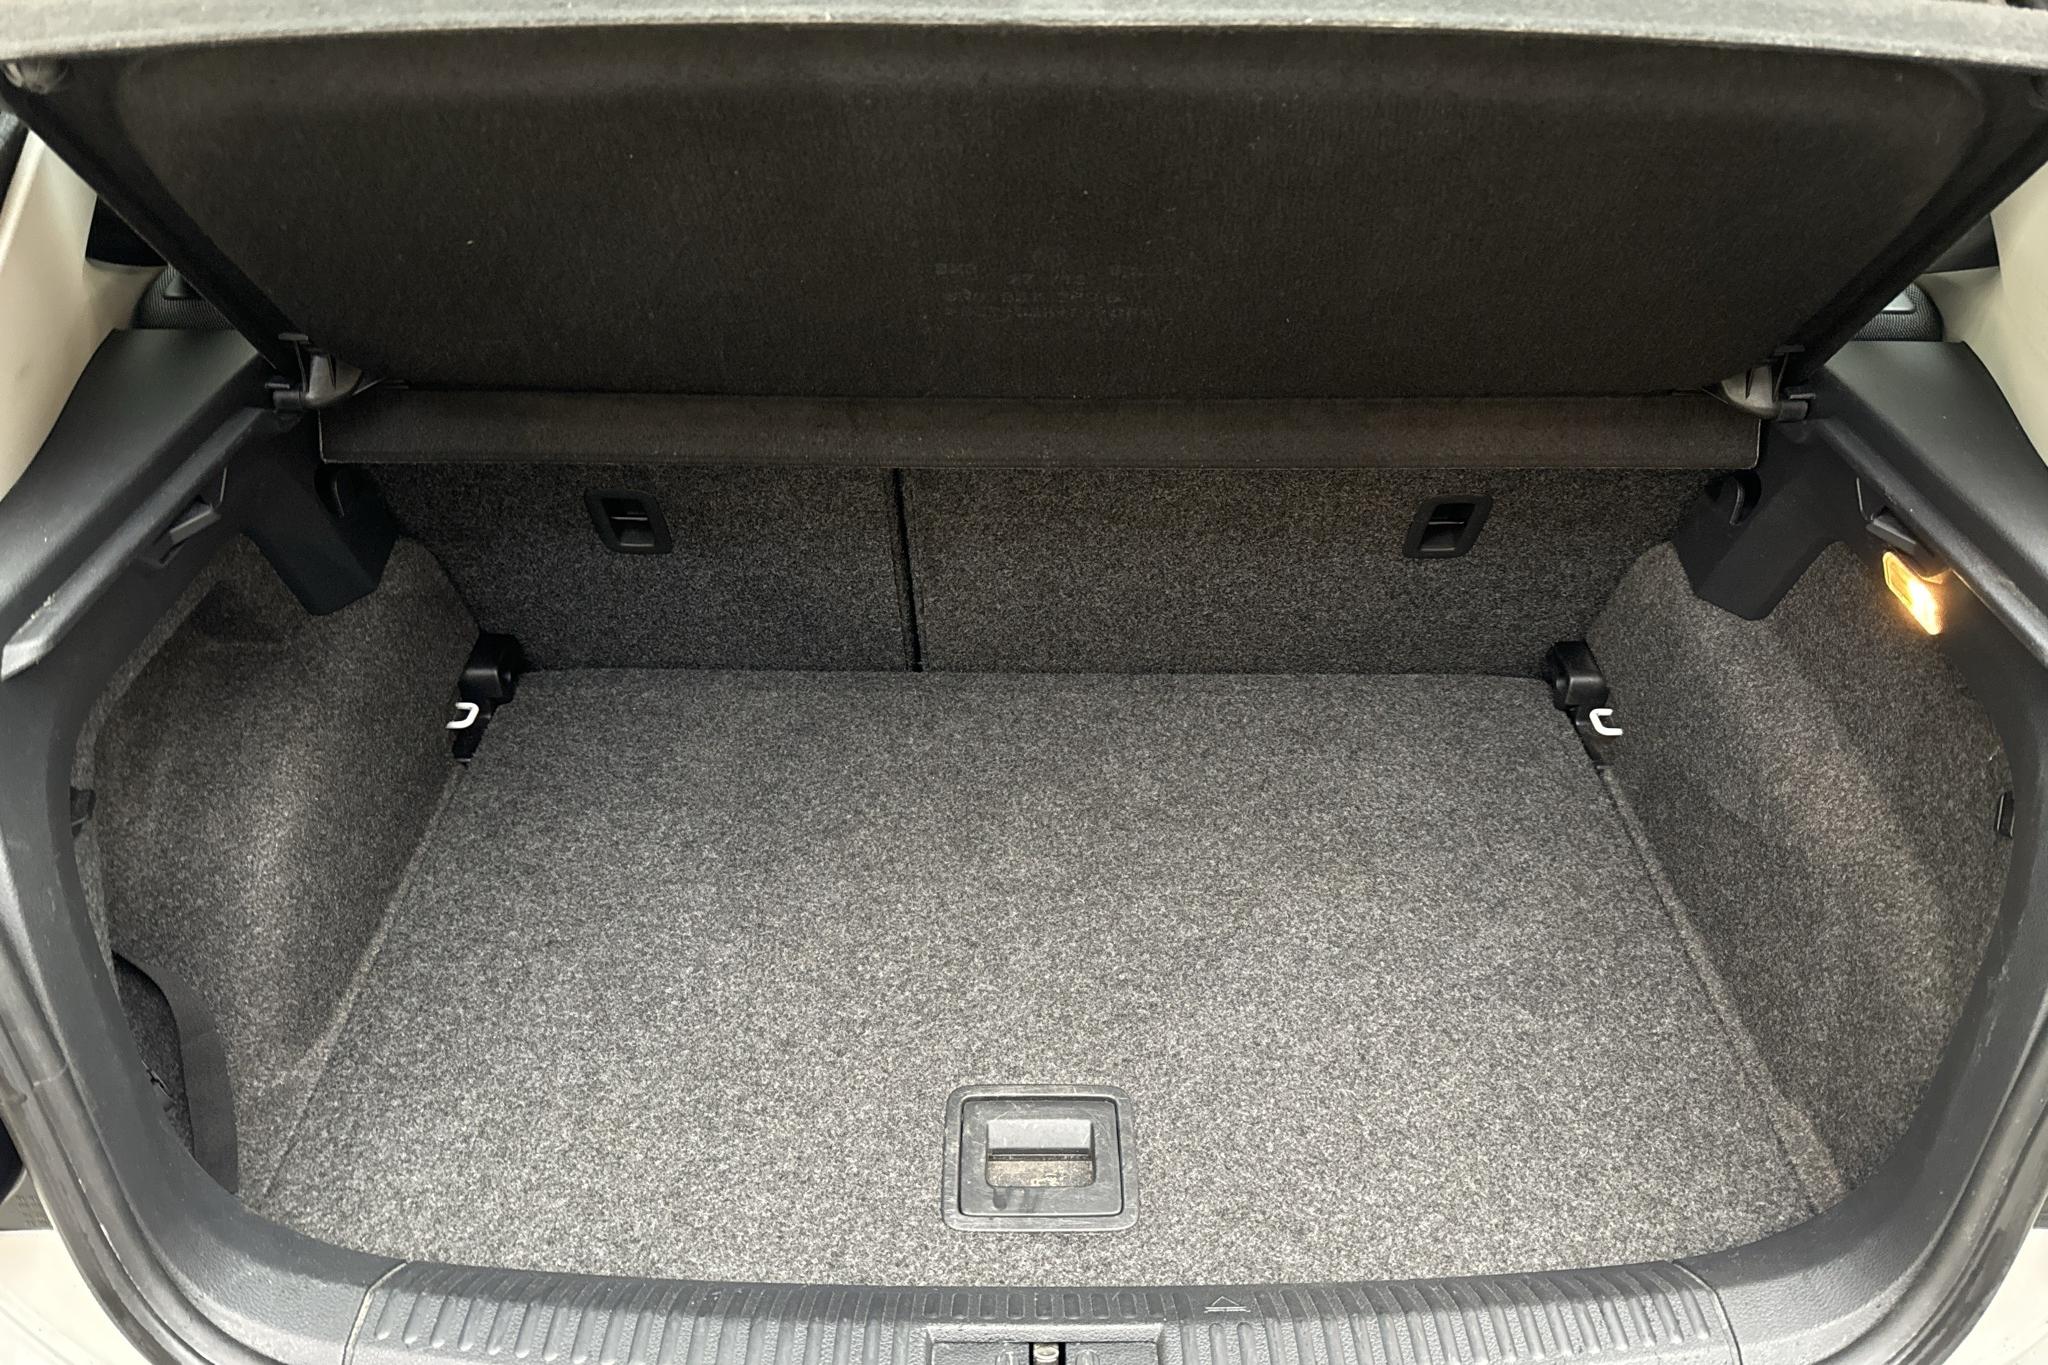 VW Polo 1.2 TSI 5dr (90hk) - 142 270 km - Manual - white - 2013